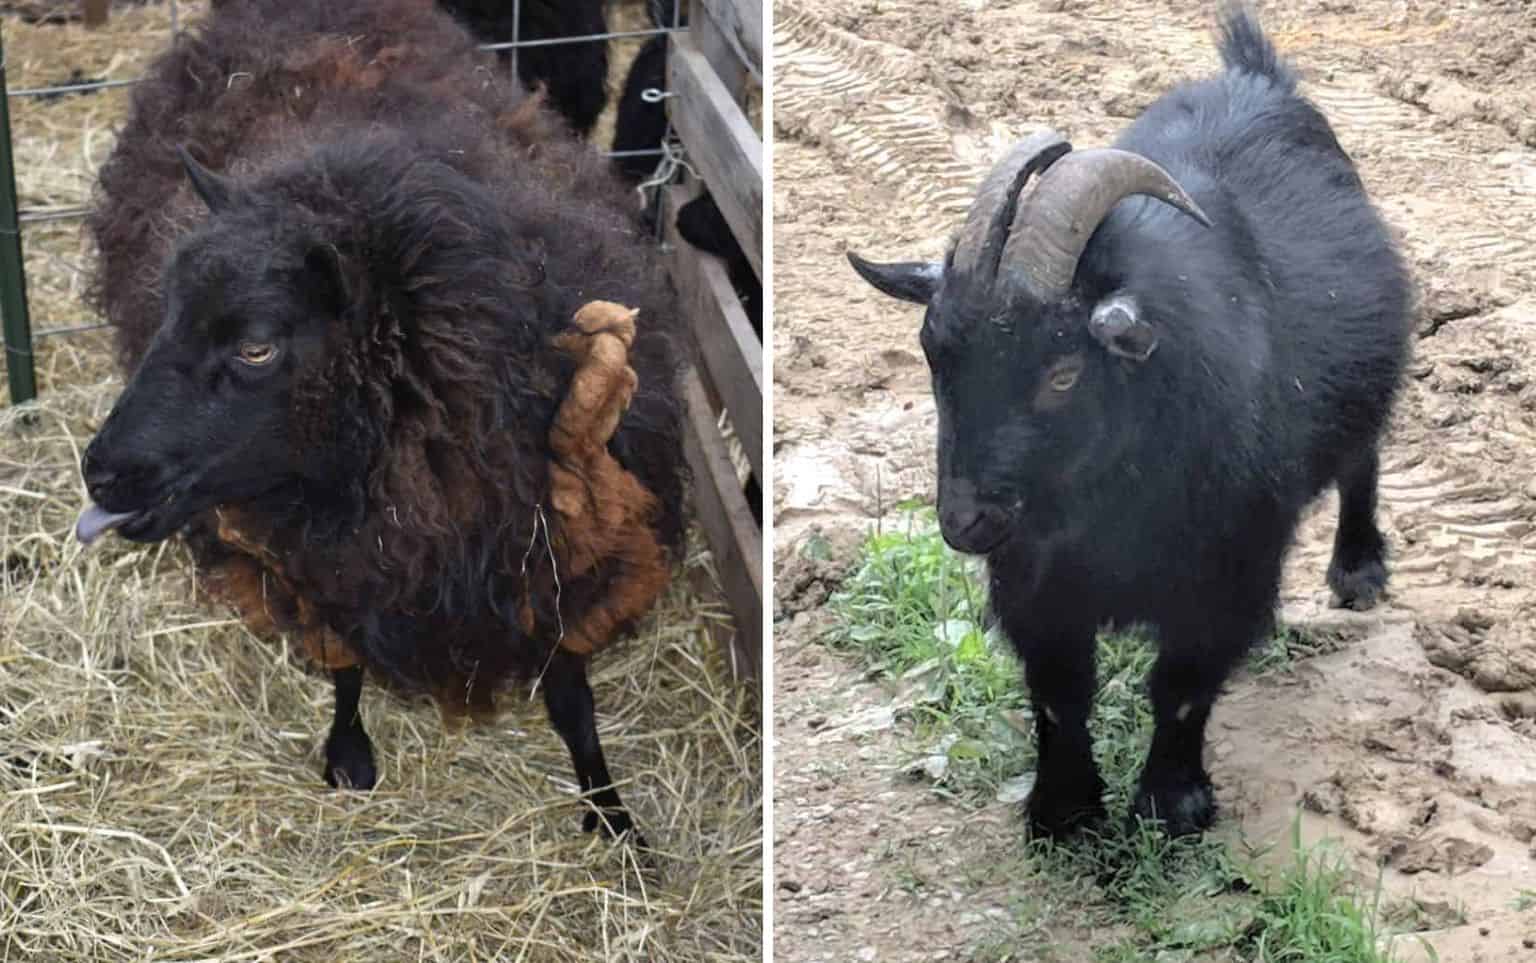 sheep (left) vs goat (right)